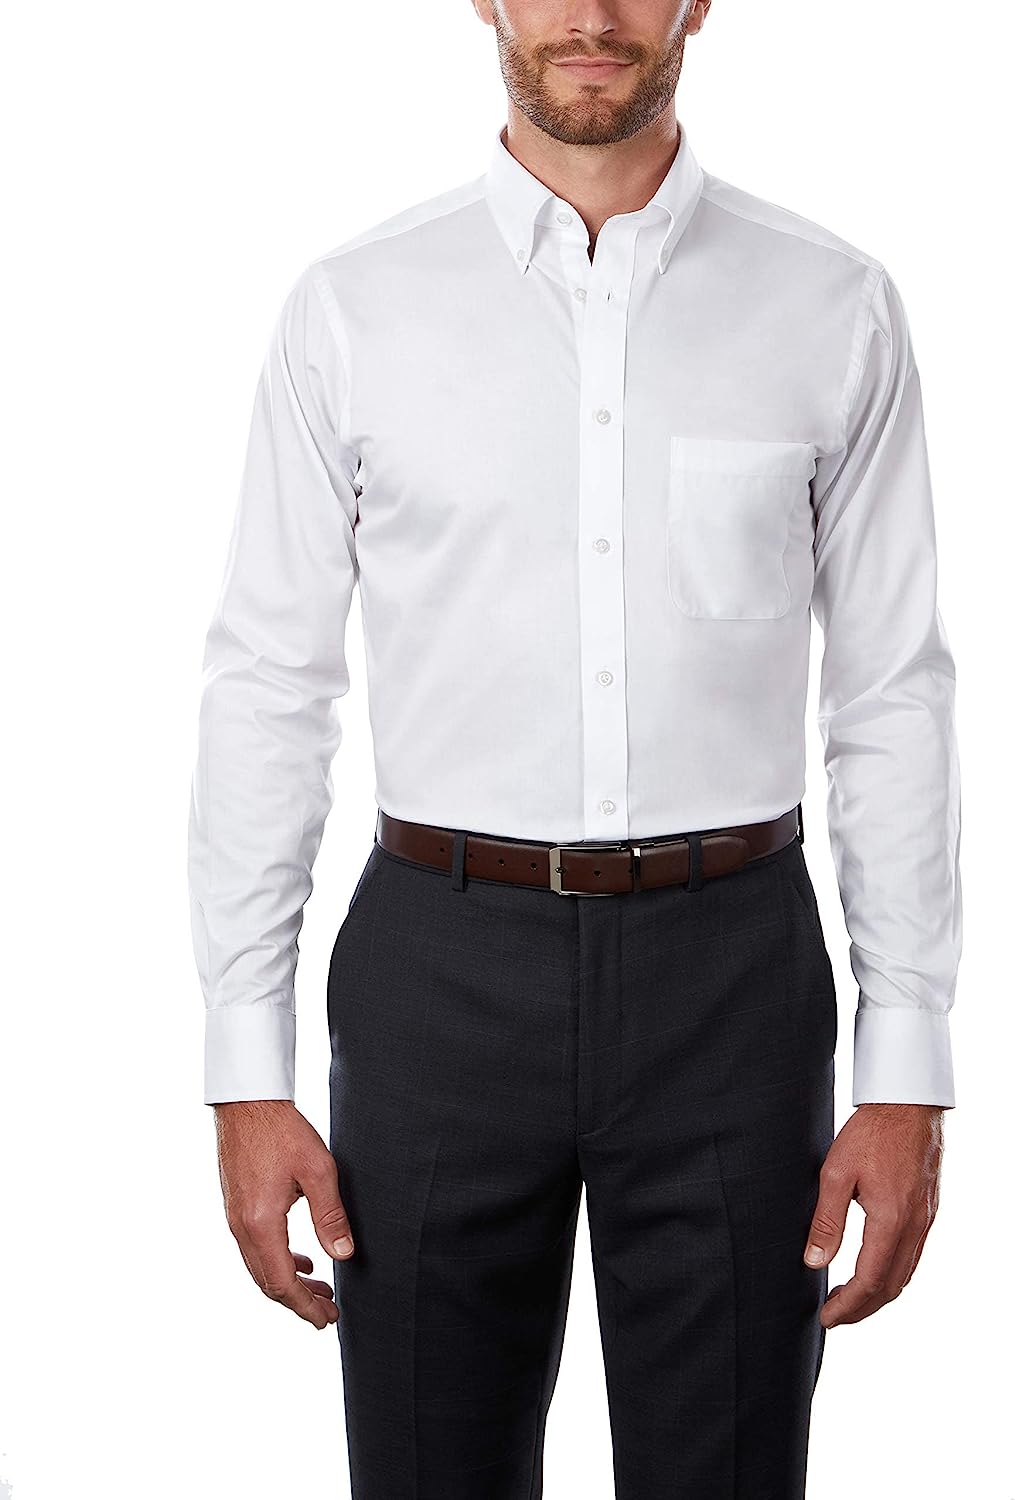 IZOD Camisa social masculina, ajuste regular, elástica, com botões